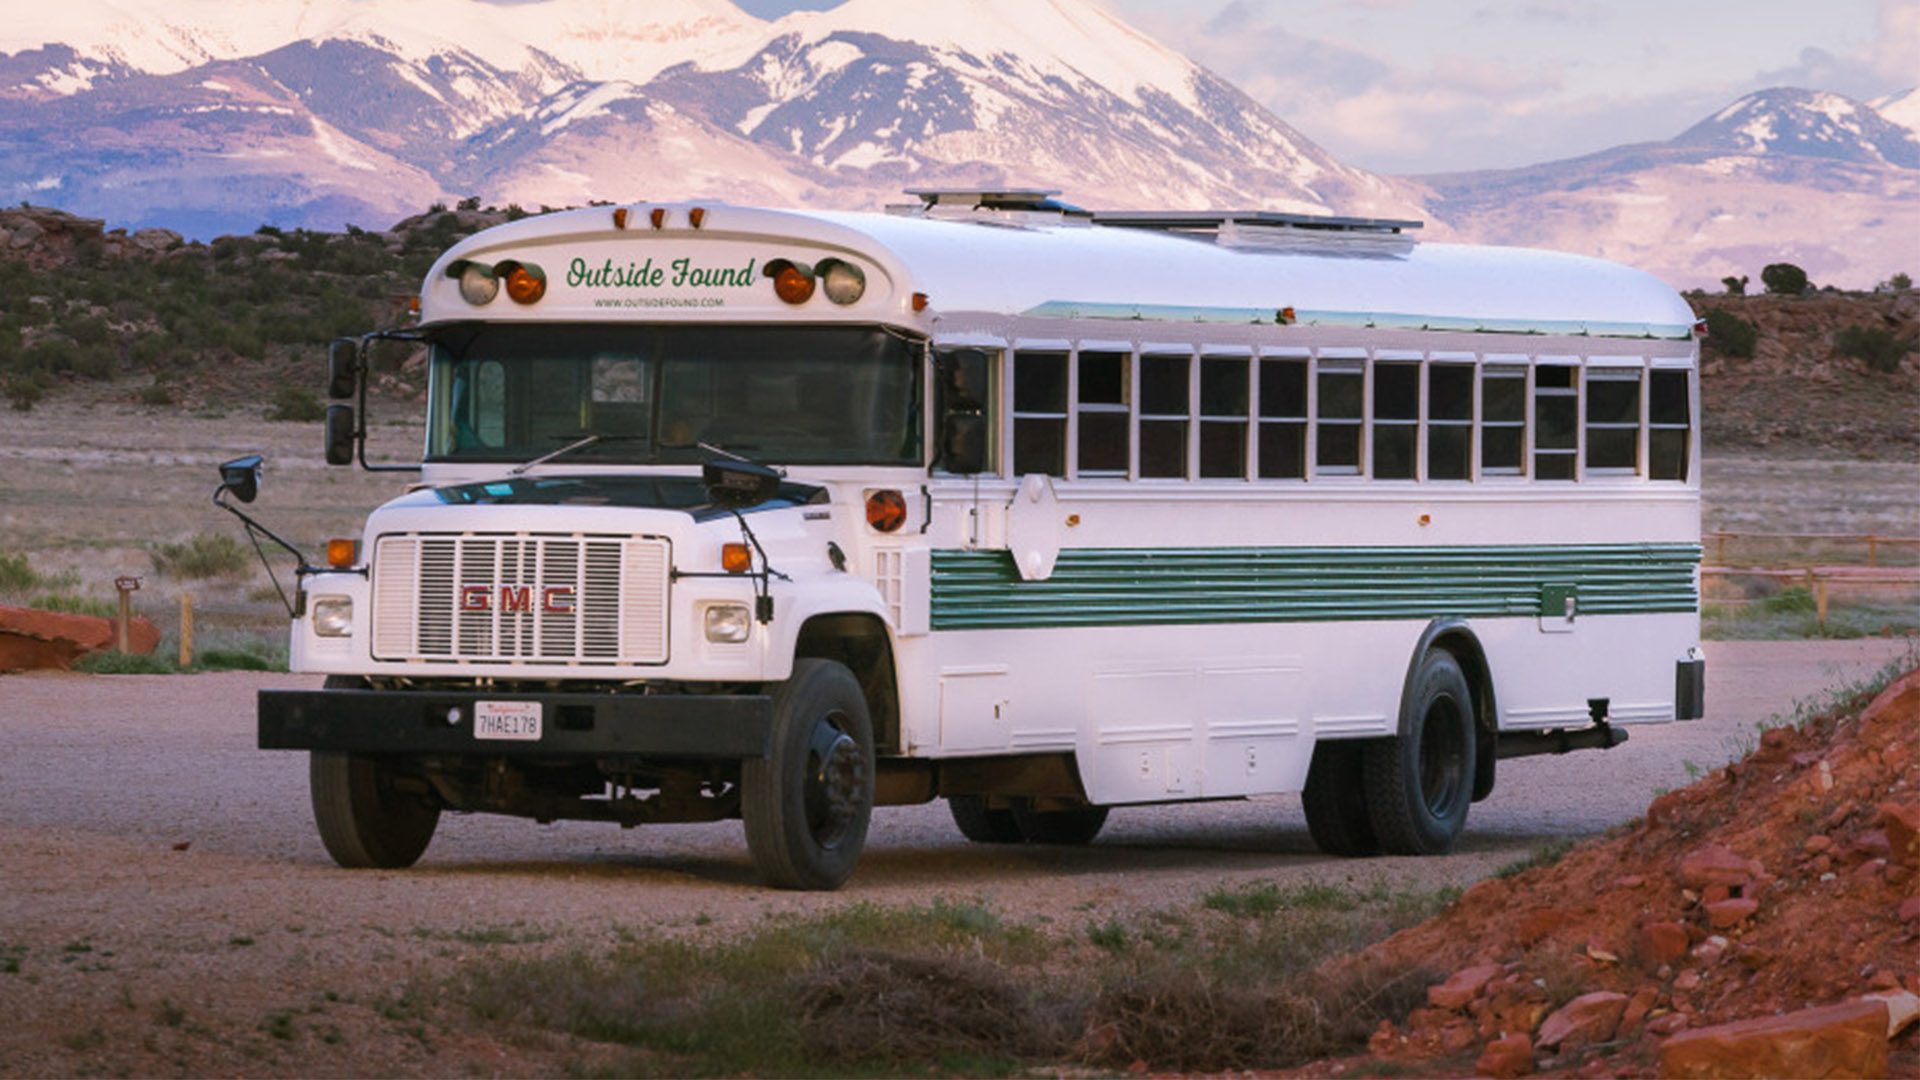 small bus camper conversion